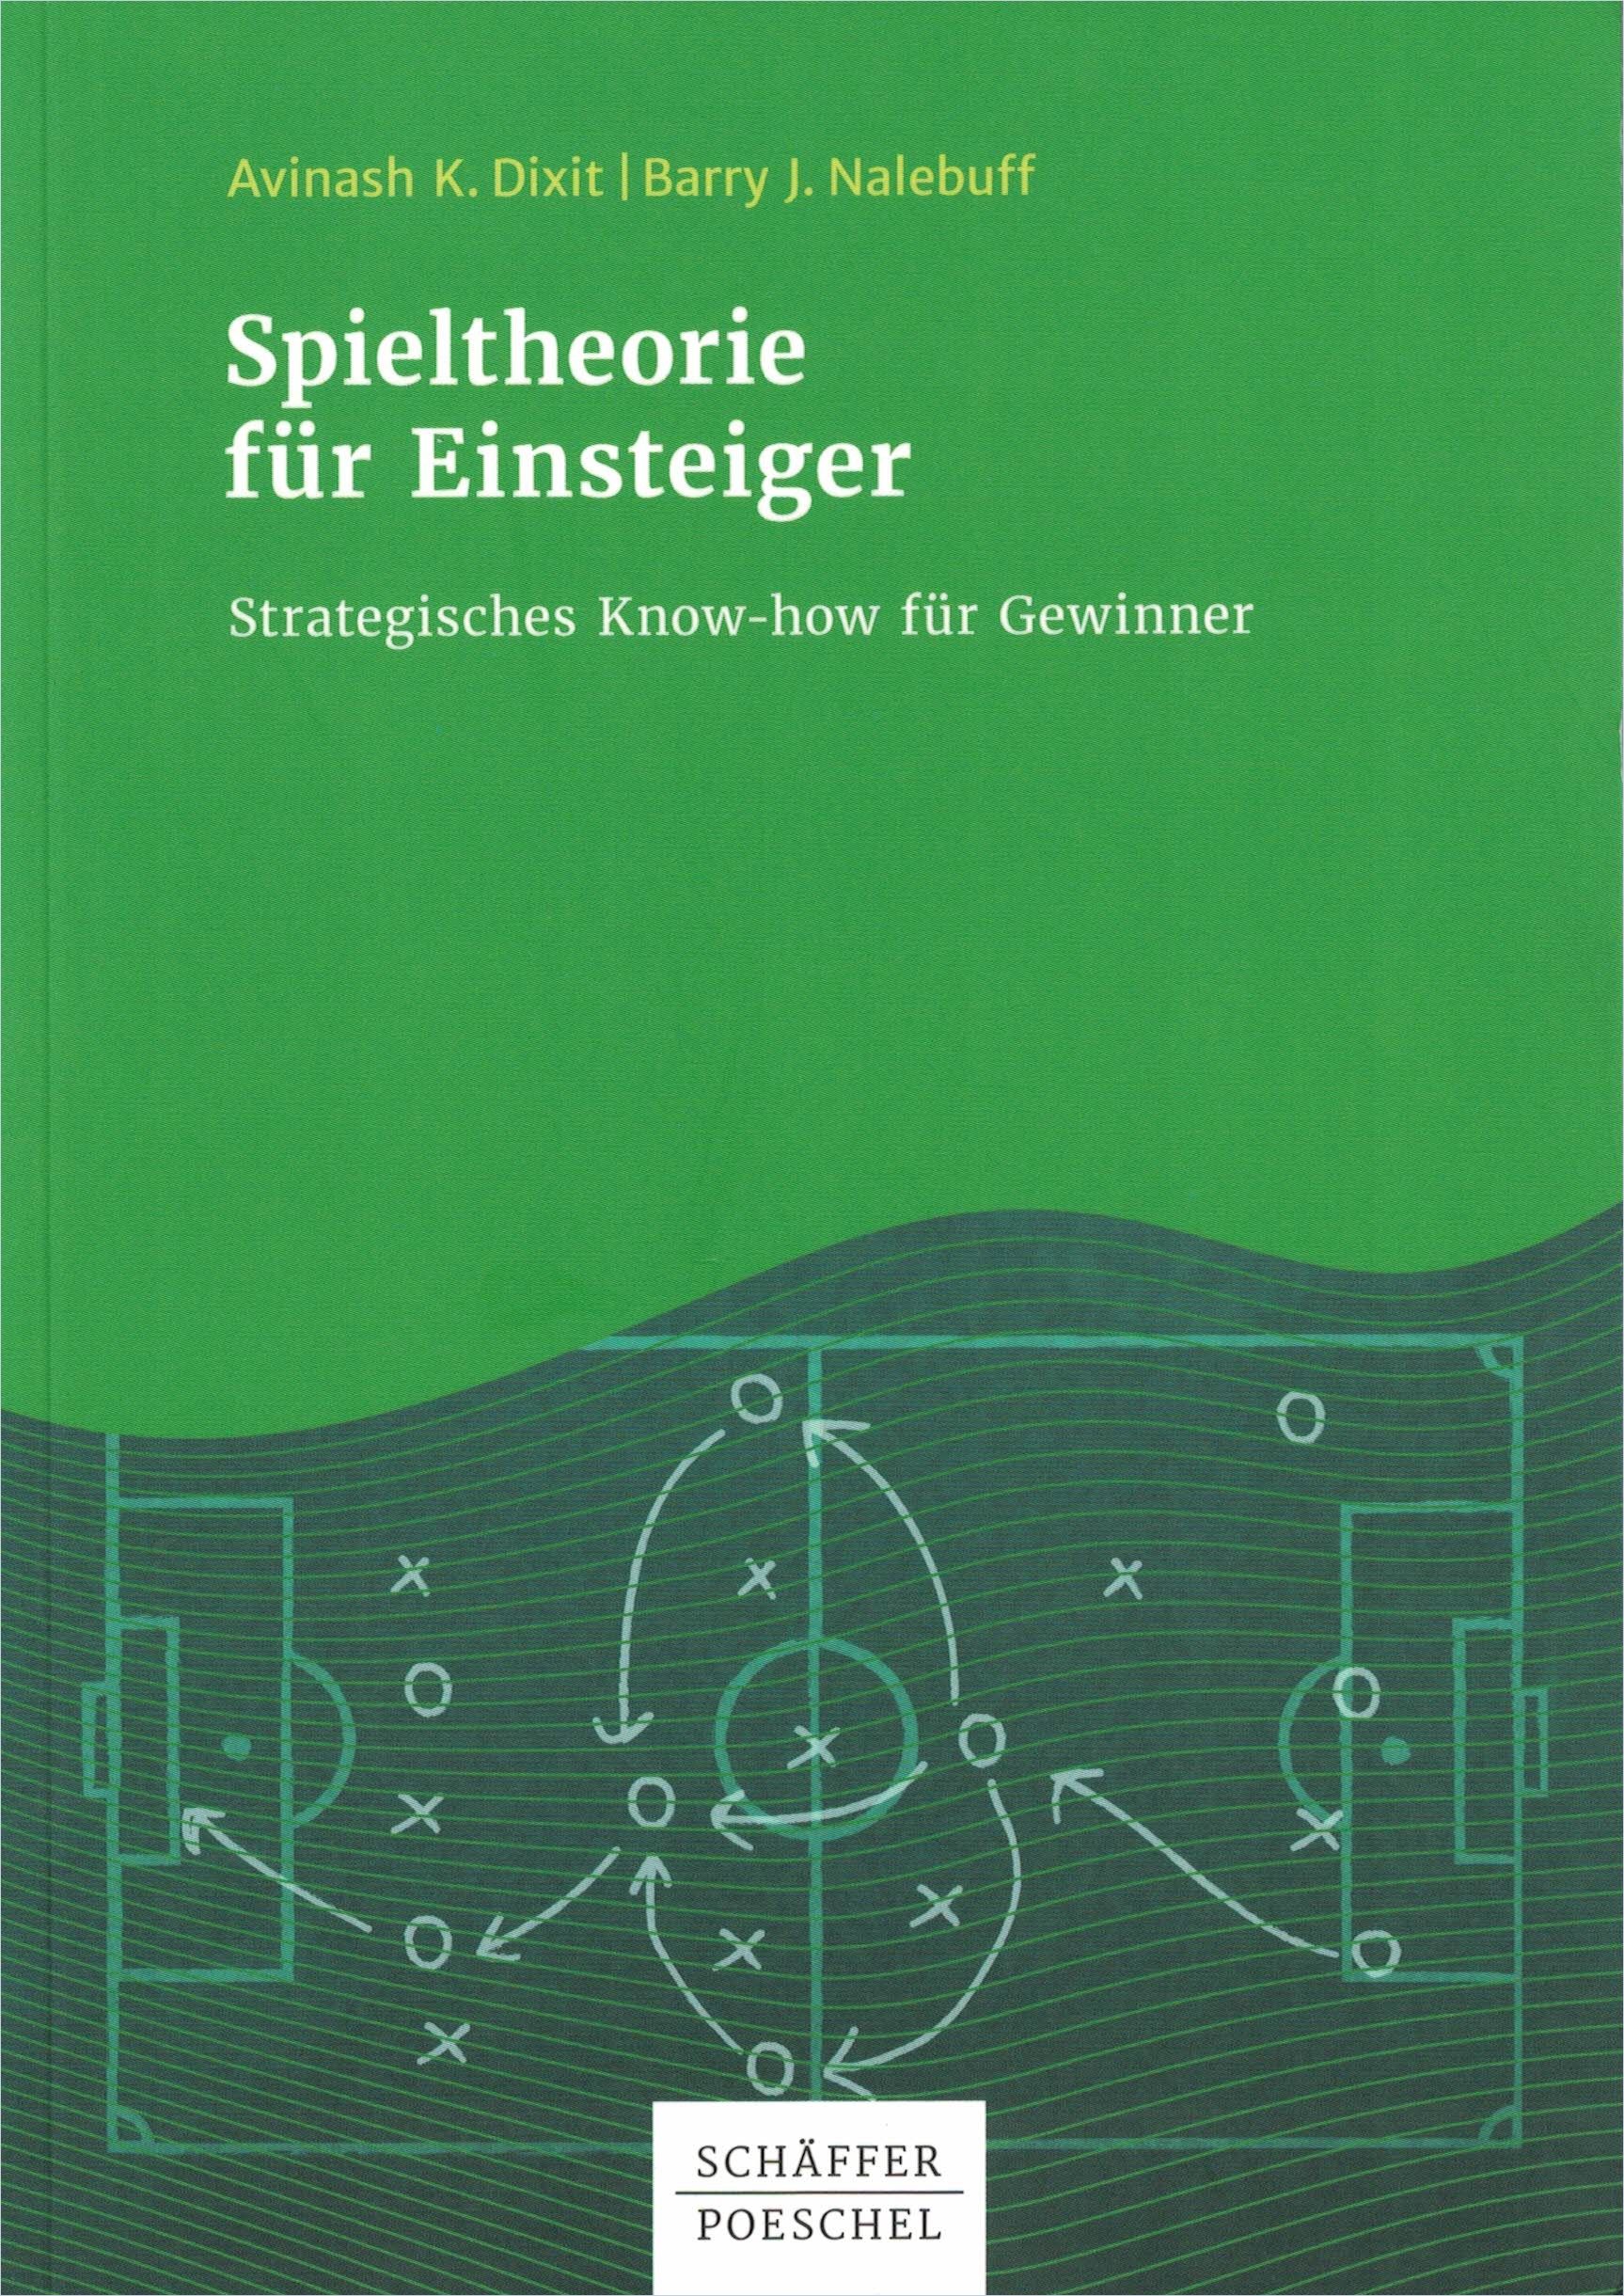 Image of: Spieltheorie für Einsteiger